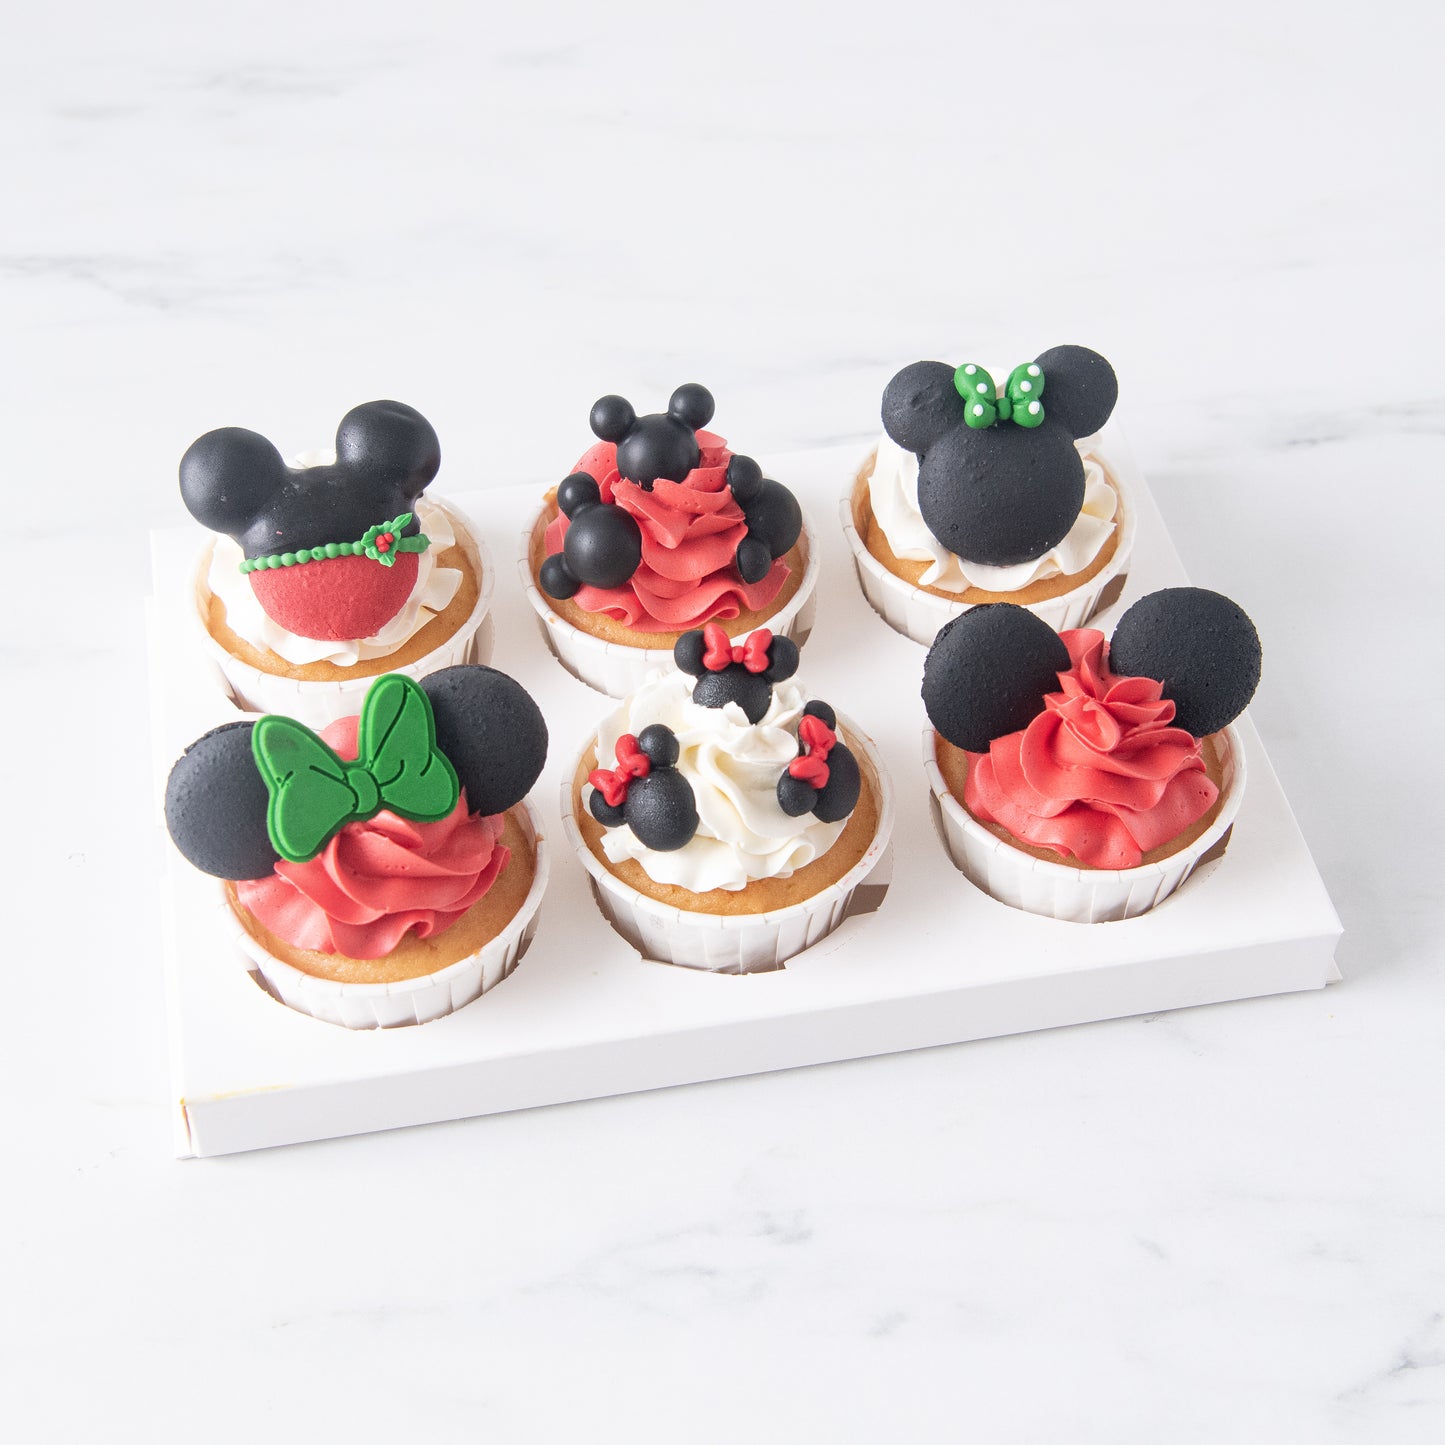 Ho ho ho! | Merry Christmas | Disney Christmas 6 pcs cupcakes | $45.80 Nett